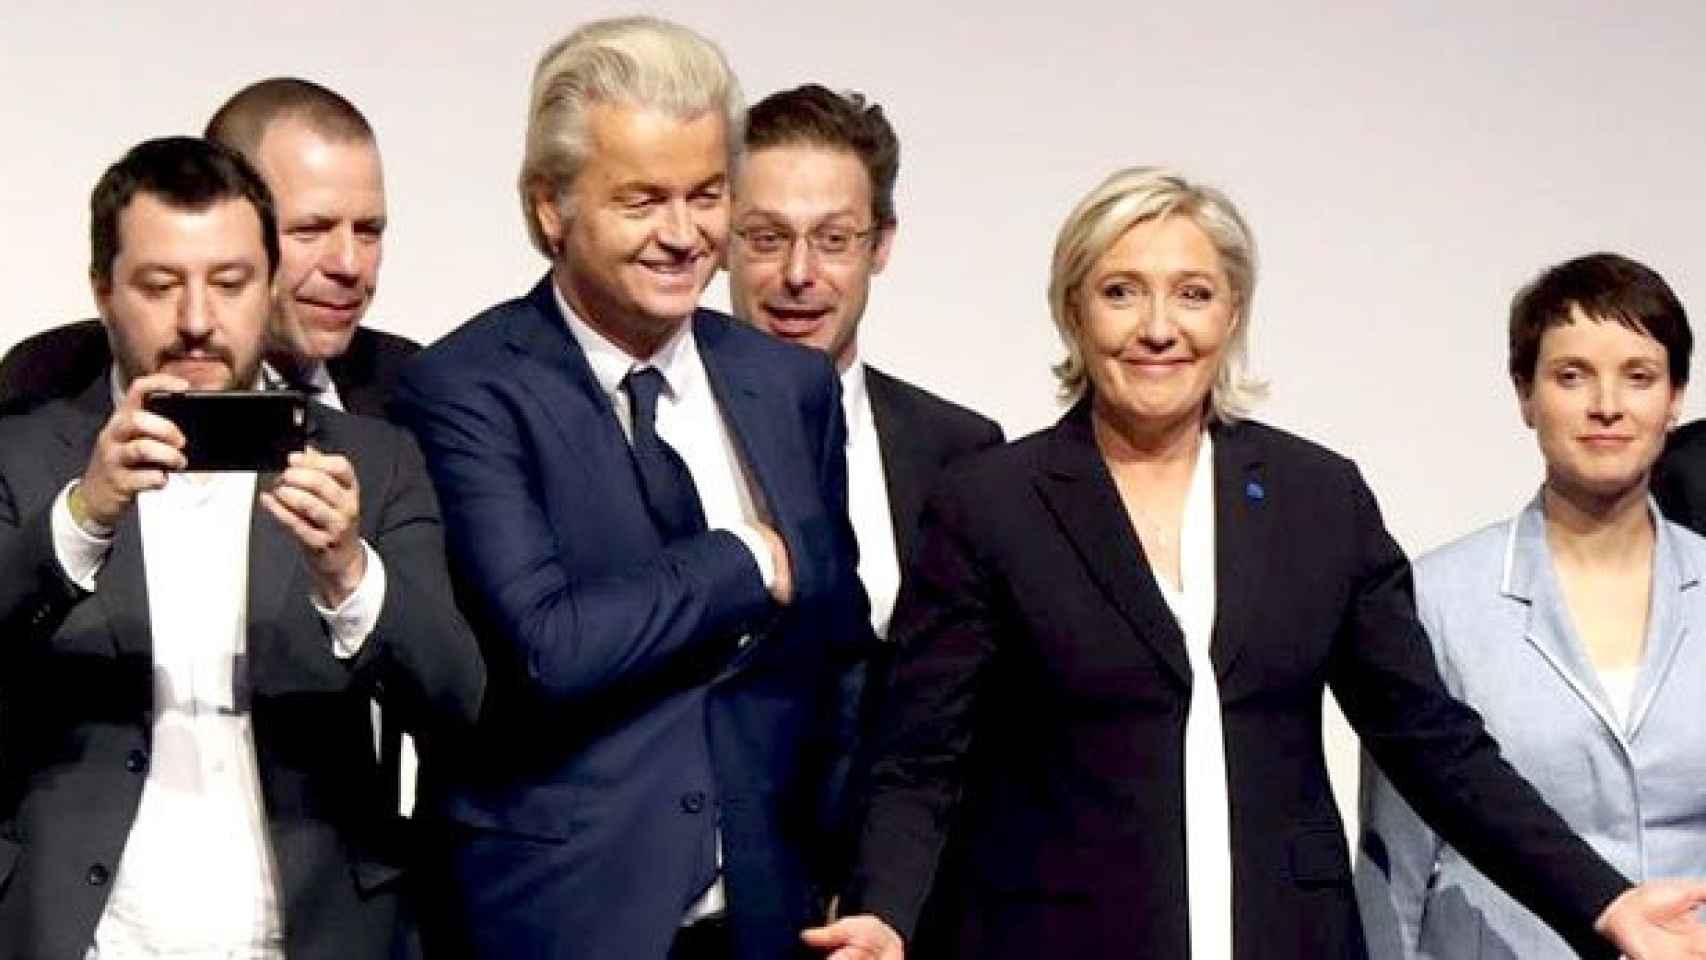 De izquierda a derecha, Matteo Salvini de Lega Nord de Italia; Harald Vilimsky del austríaco FPOe; Geert Wilders, del Partido de la Libertad holandés; Marcus Pretzell, eurodiputado de Alternativa por Alemania; Marine Le Pen, del Frente Nacional francés; y